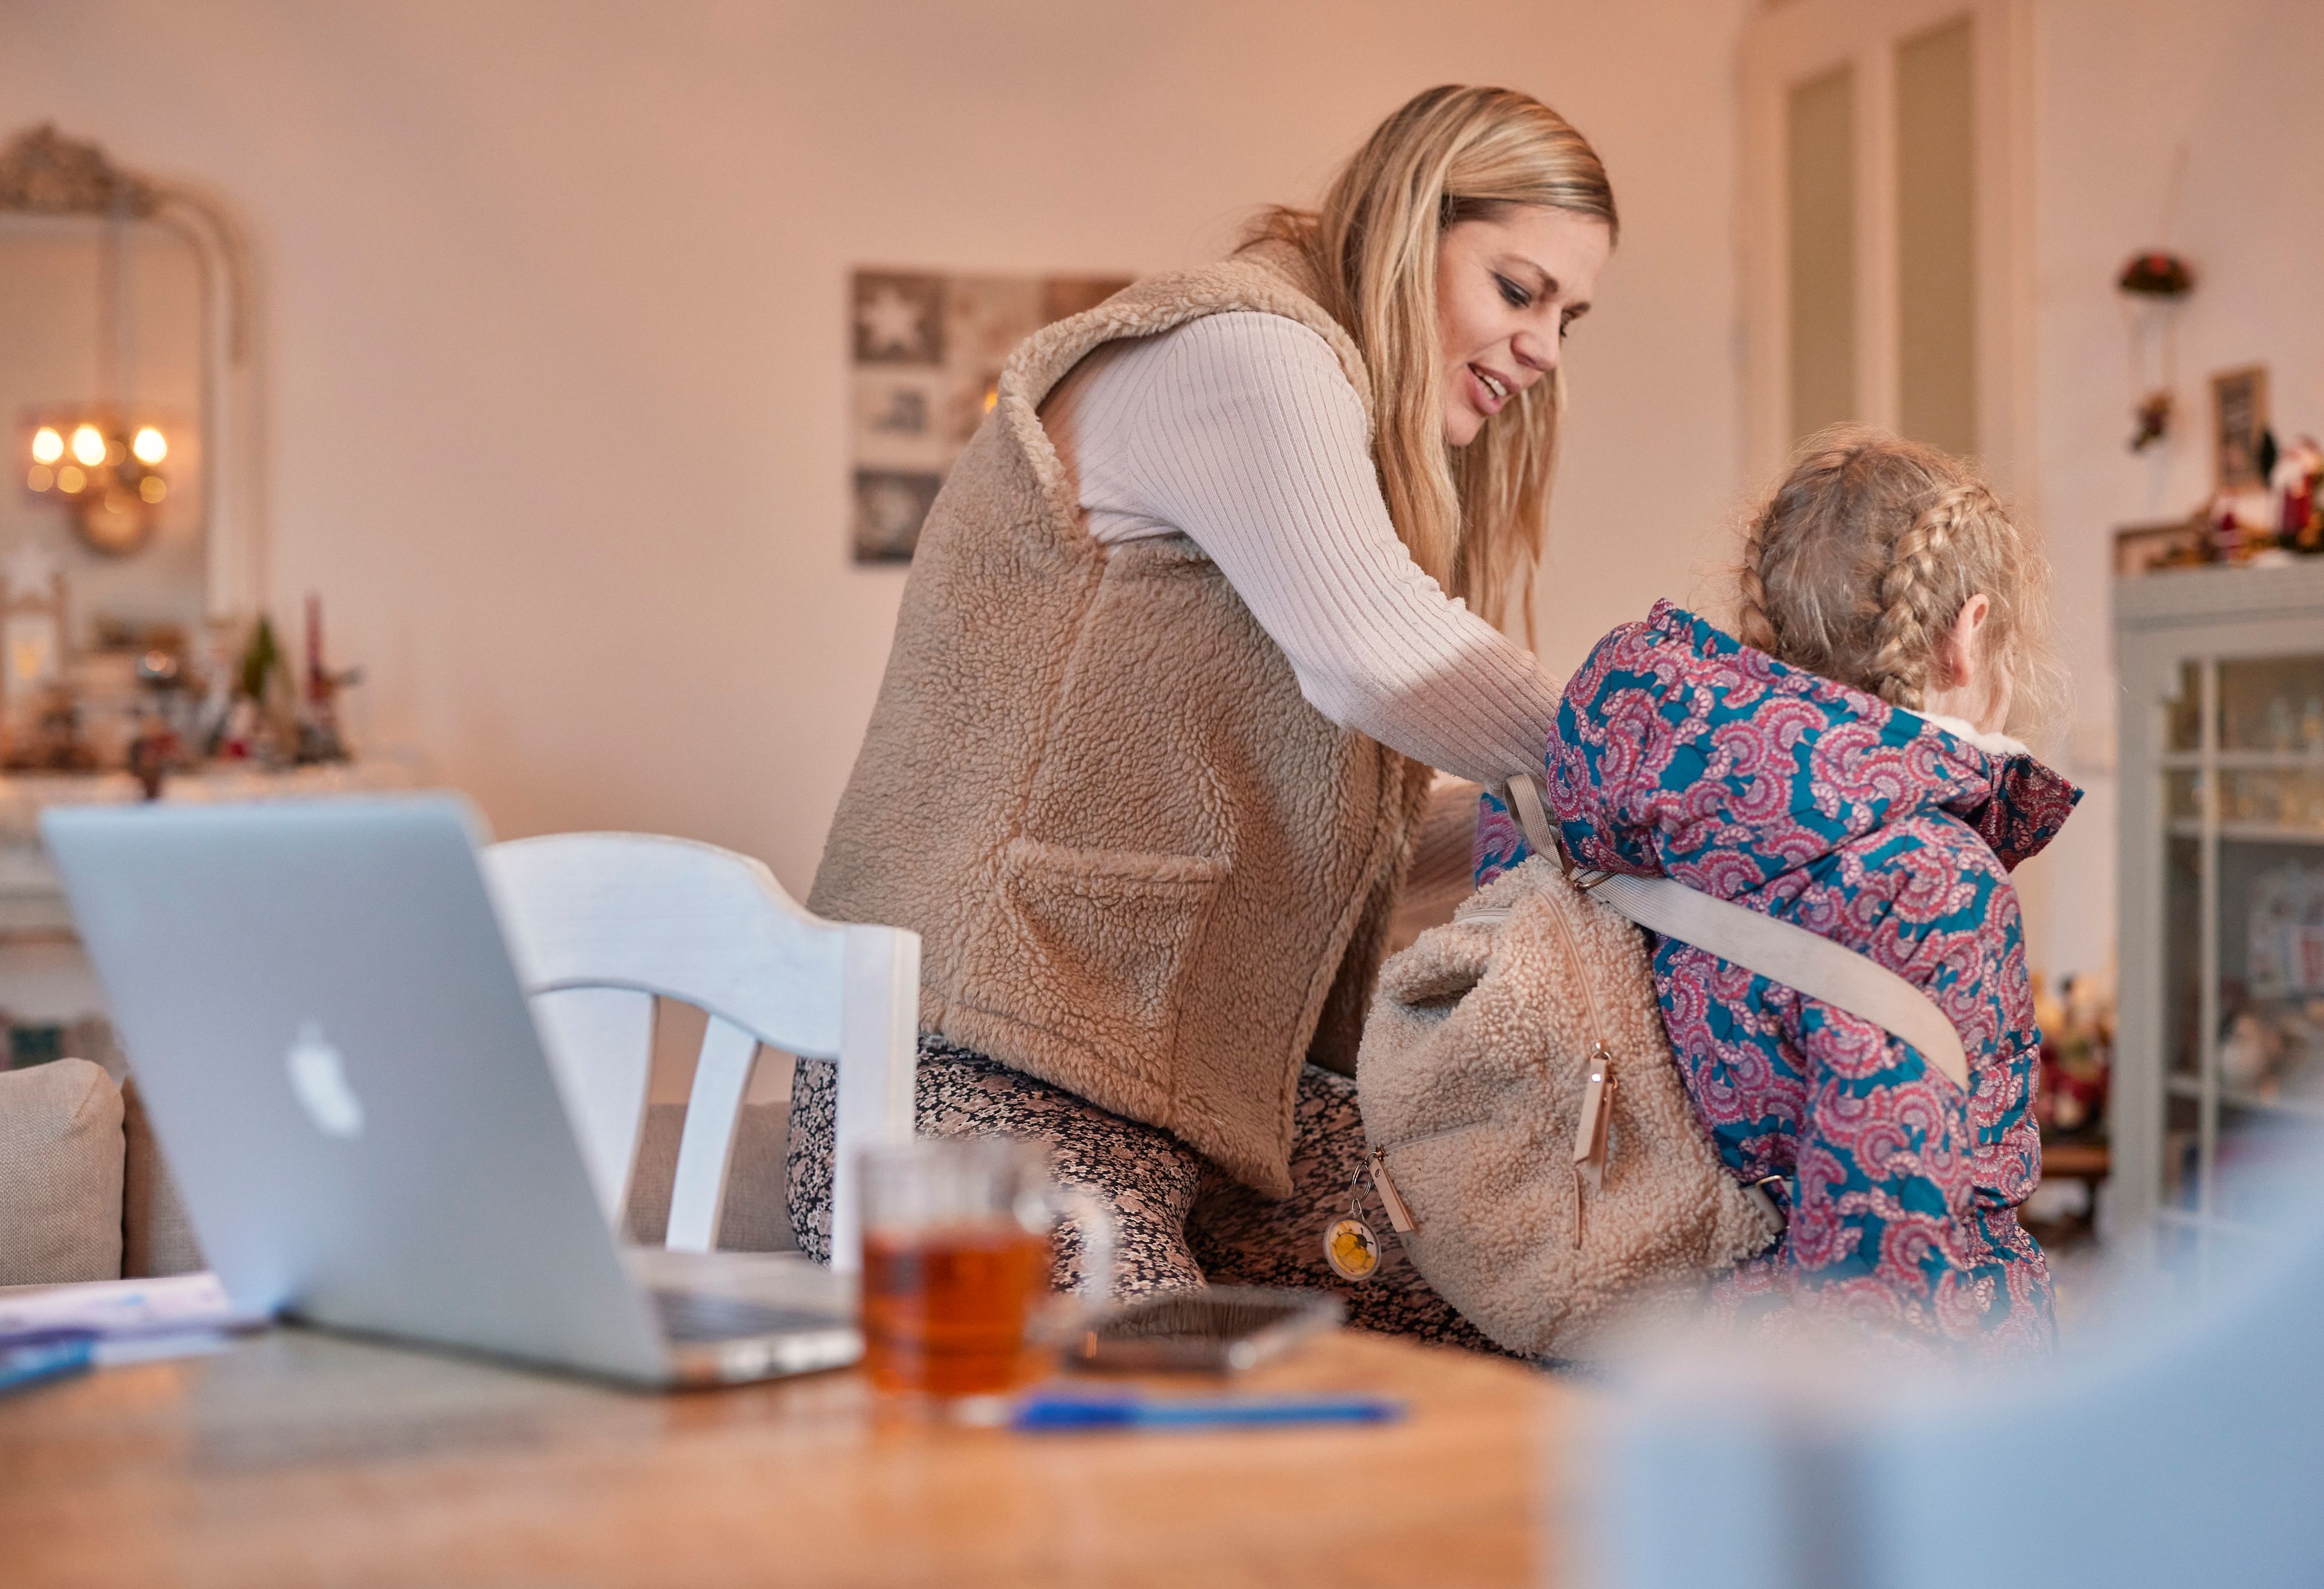 Een vrouw helpt een kind met haar jas en rugtas. Op tafel staat een opengeklapte laptop en een kop thee.